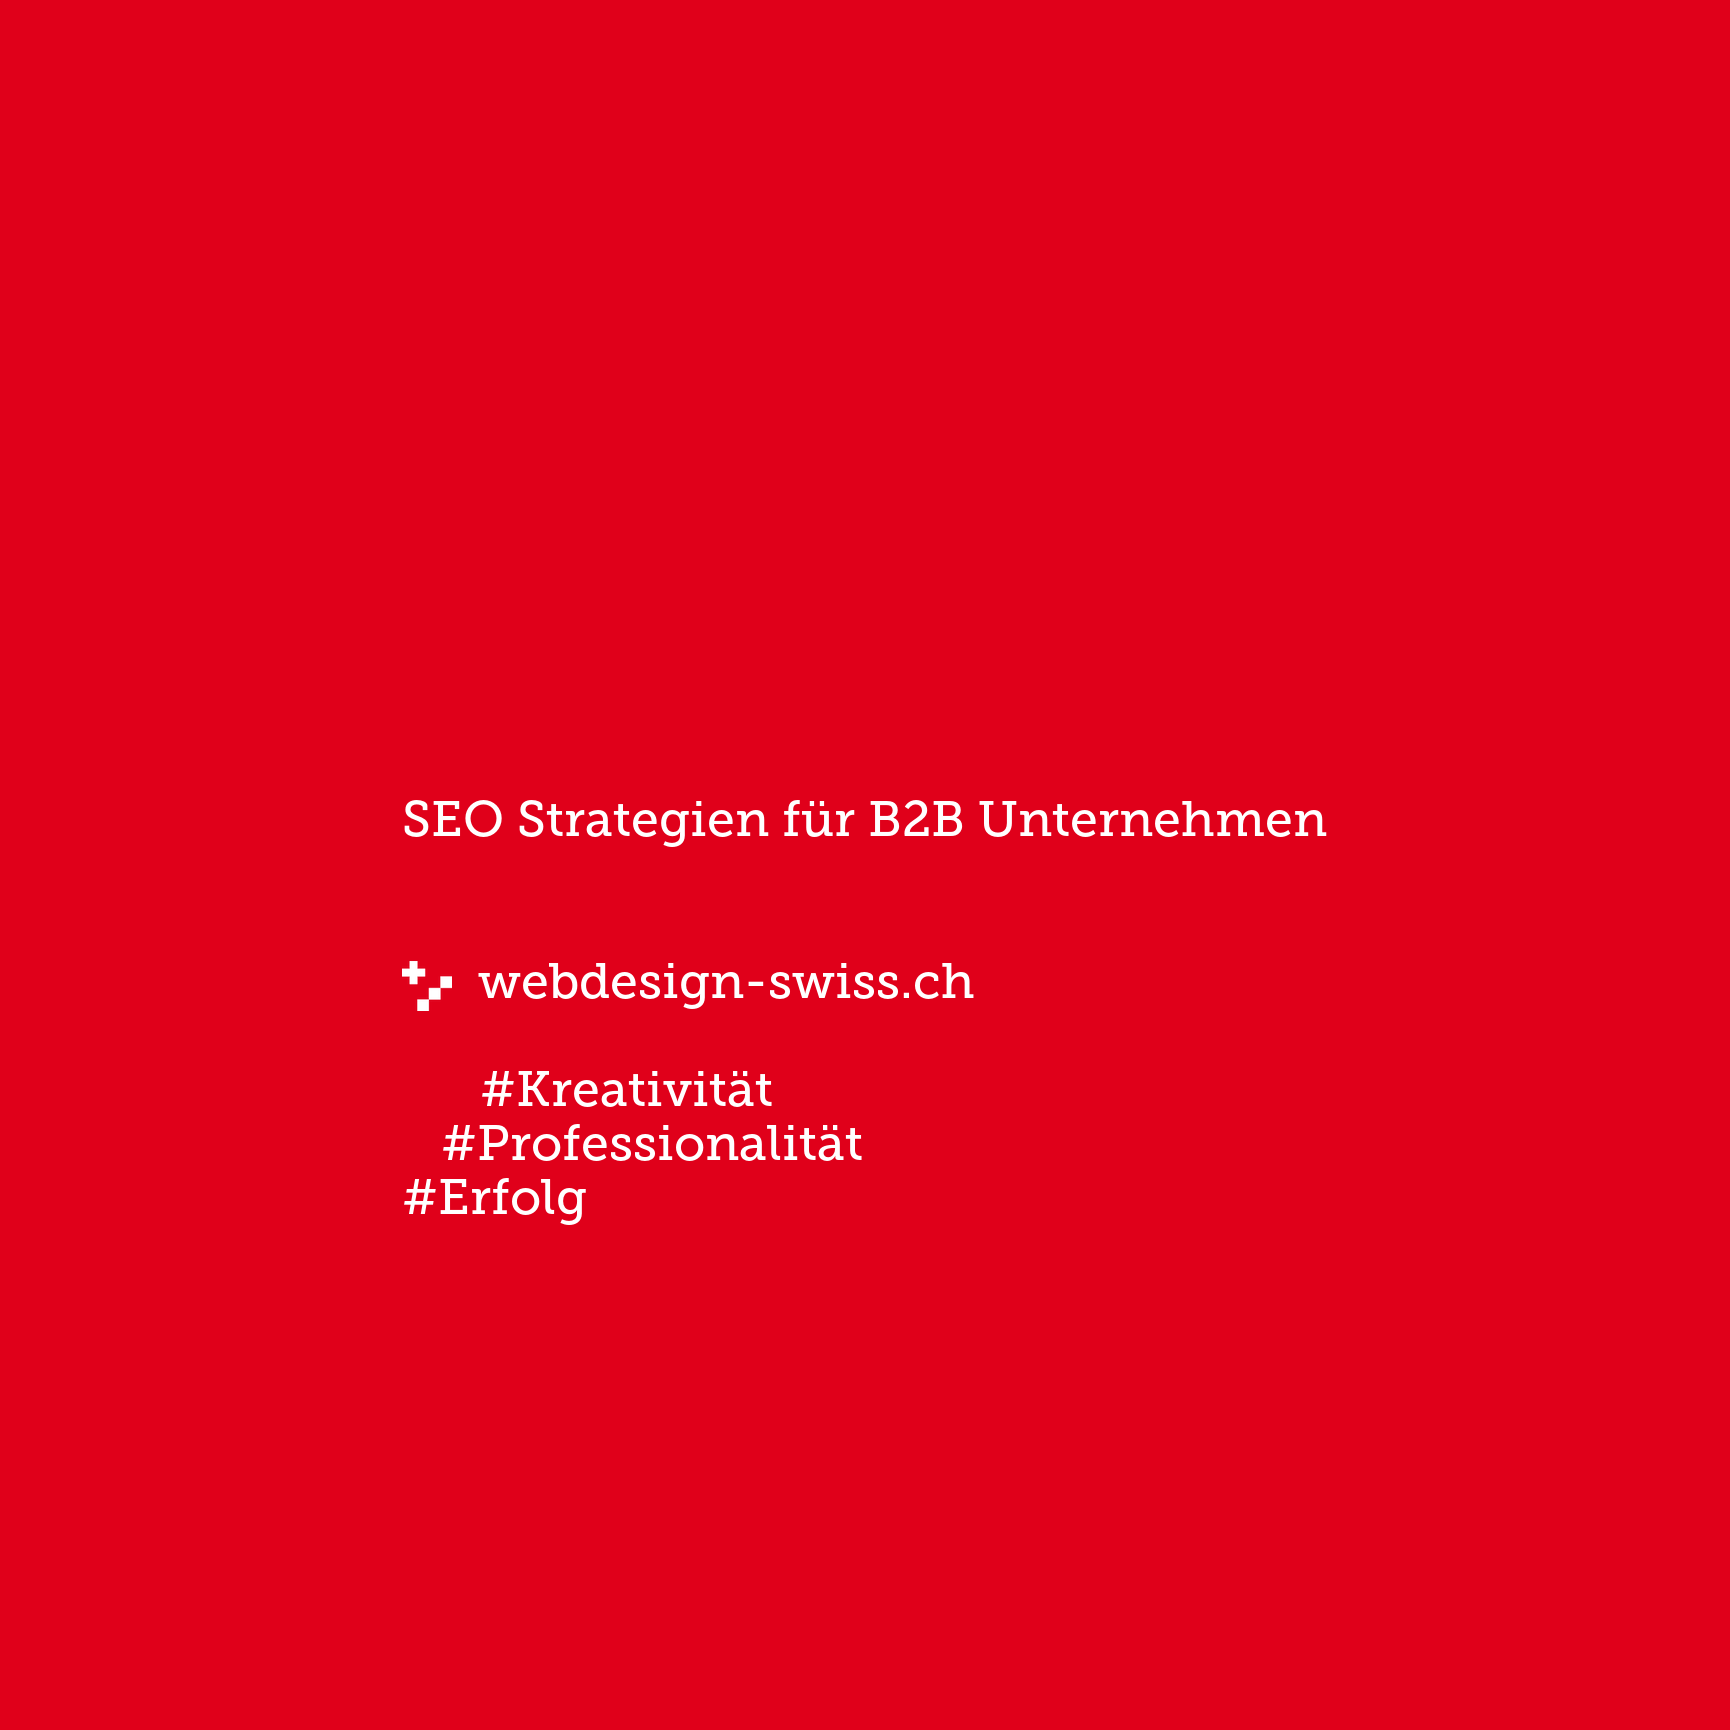 SEO Strategien für B2B Unternehmen